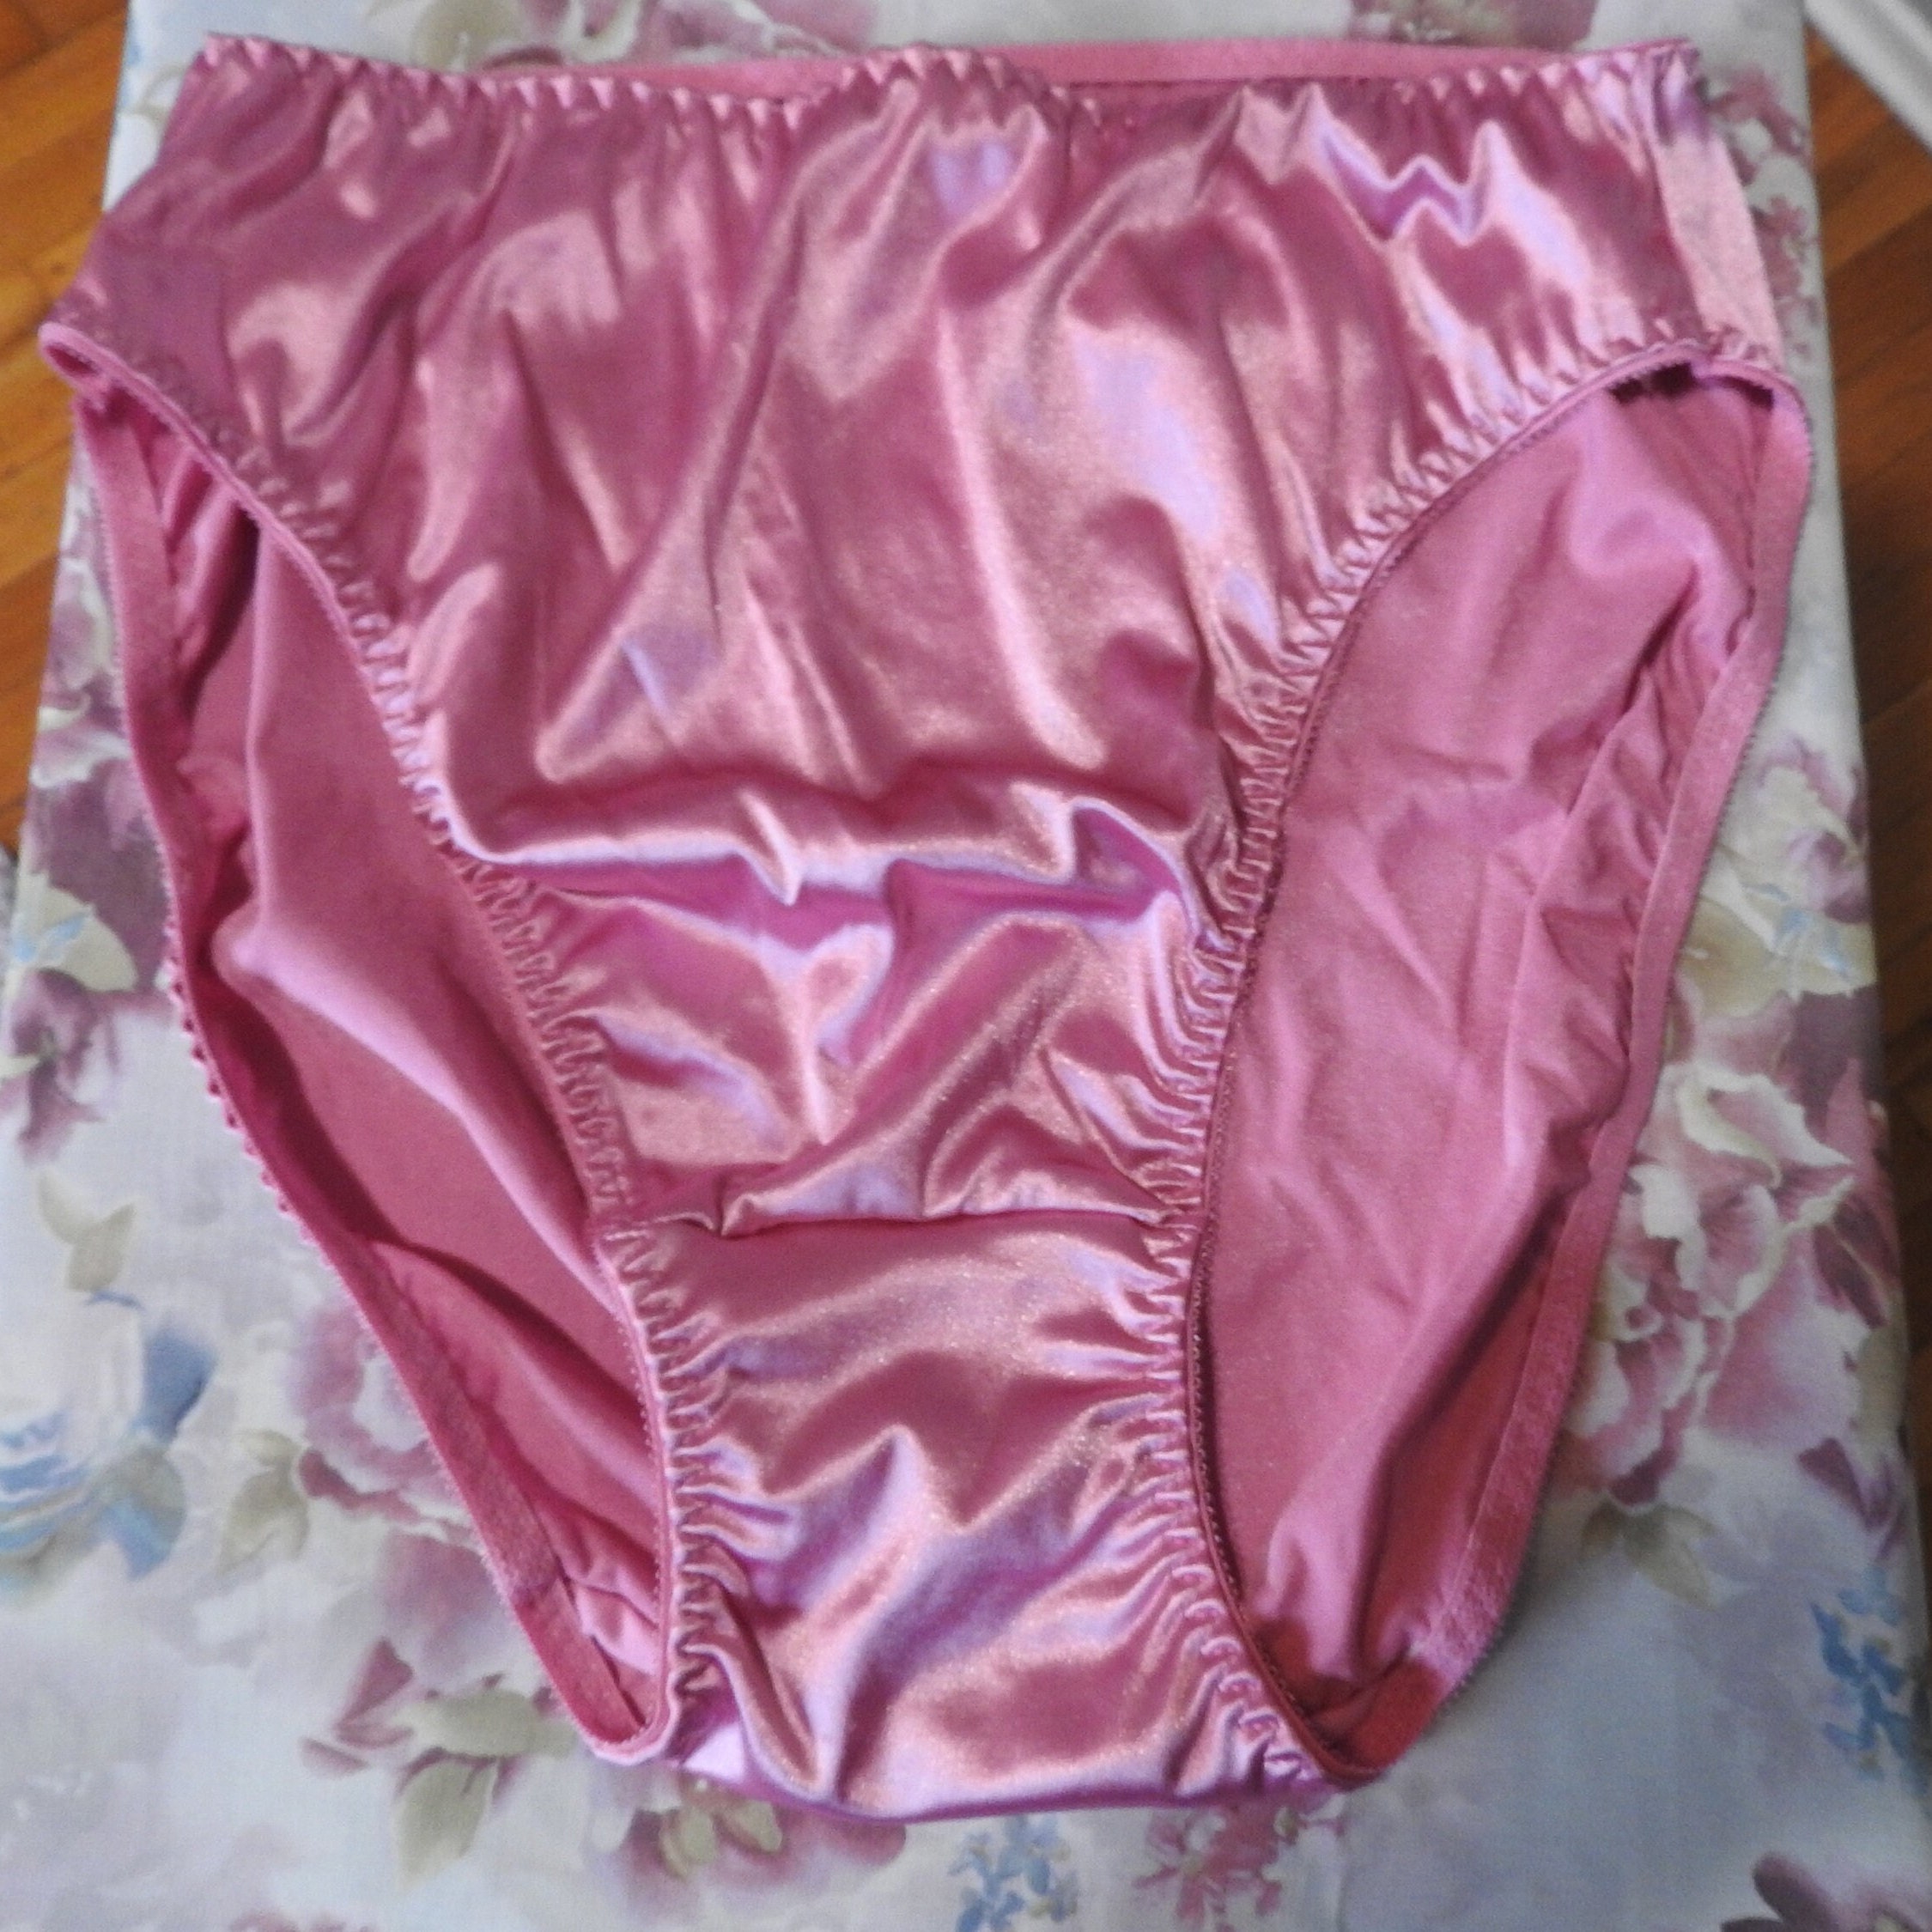 Delta Burke Classic Panties for Women